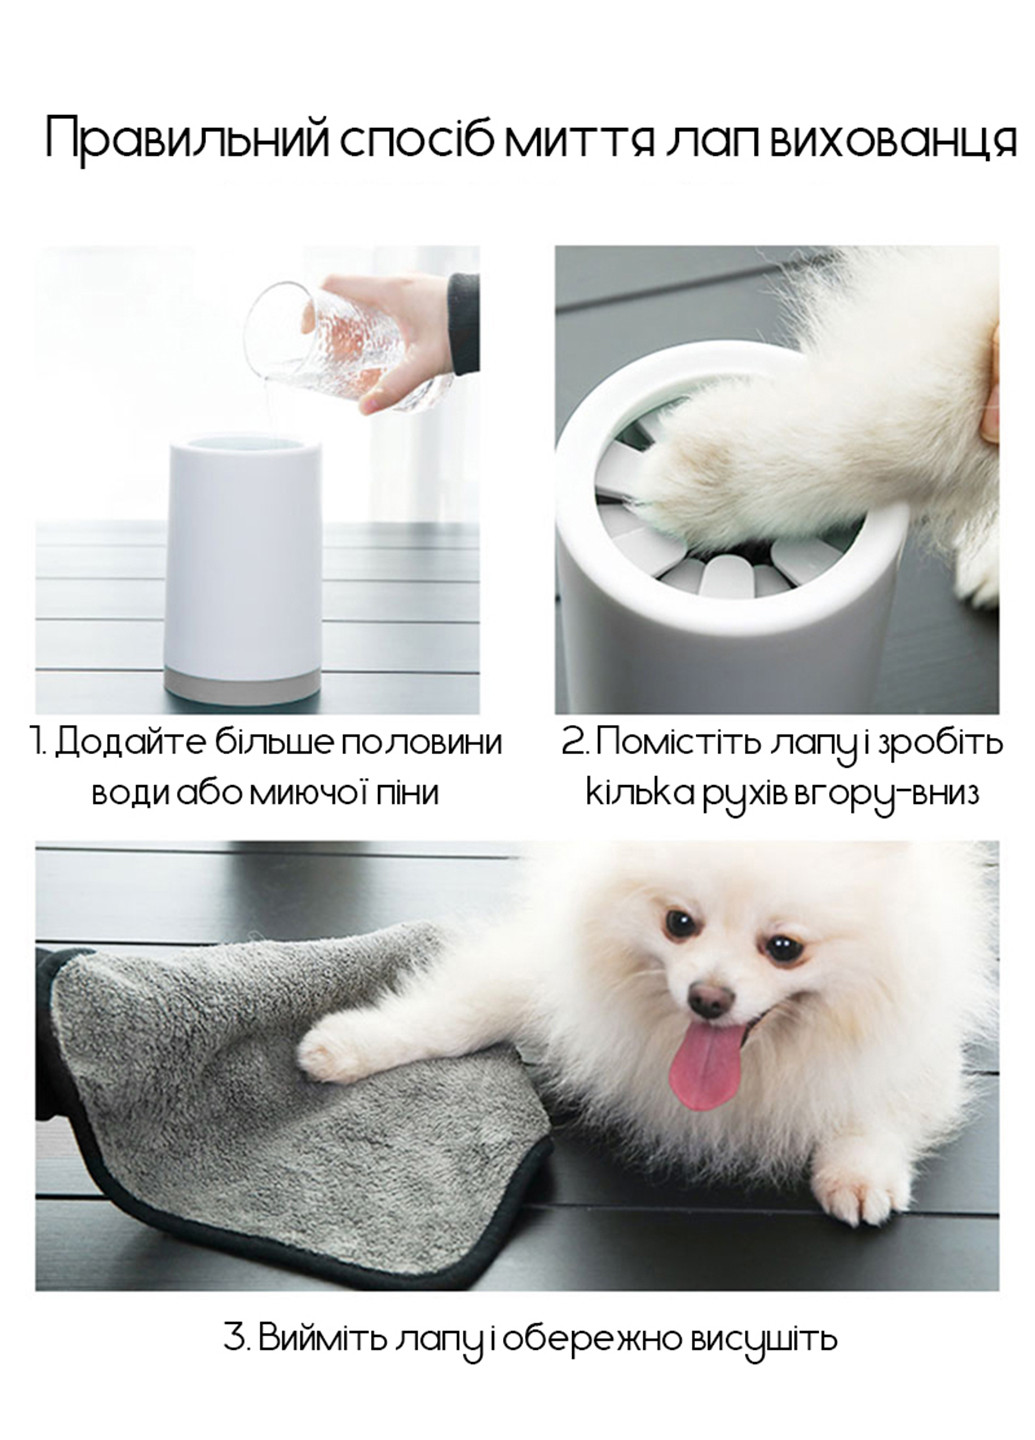 Лапомойка для собак, емкость для мытья лап домашних животных S (9x13 см) Carno